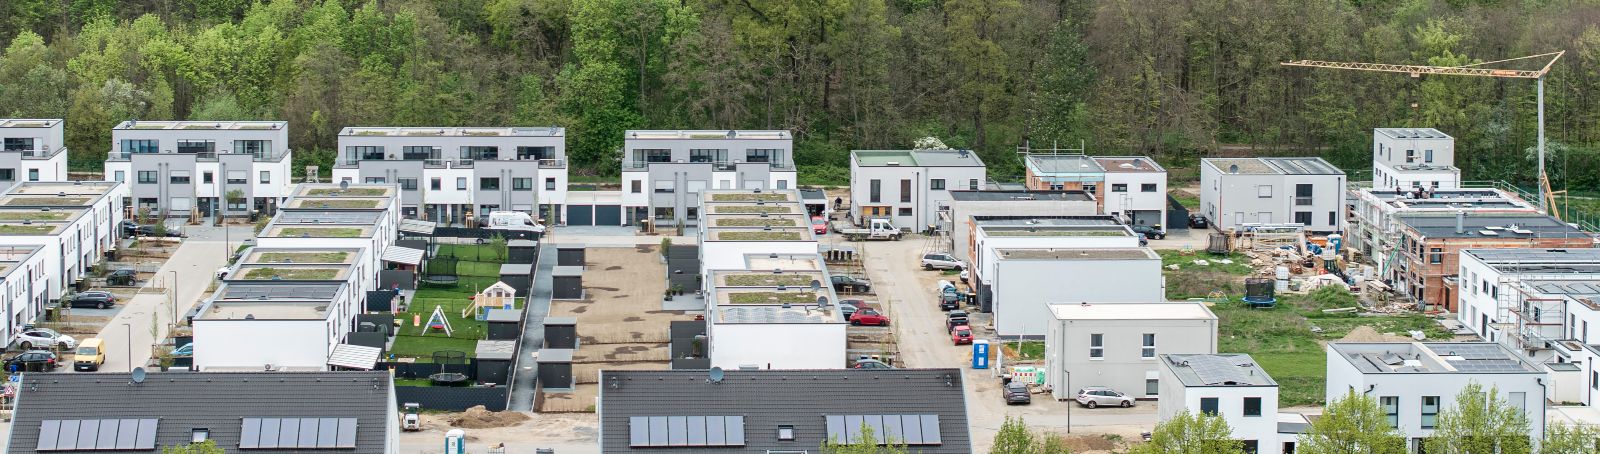 SmartQuart in der Umsetzung: Hier zu sehen ist das energieeffiziente Neubauquartier in Bedburg.